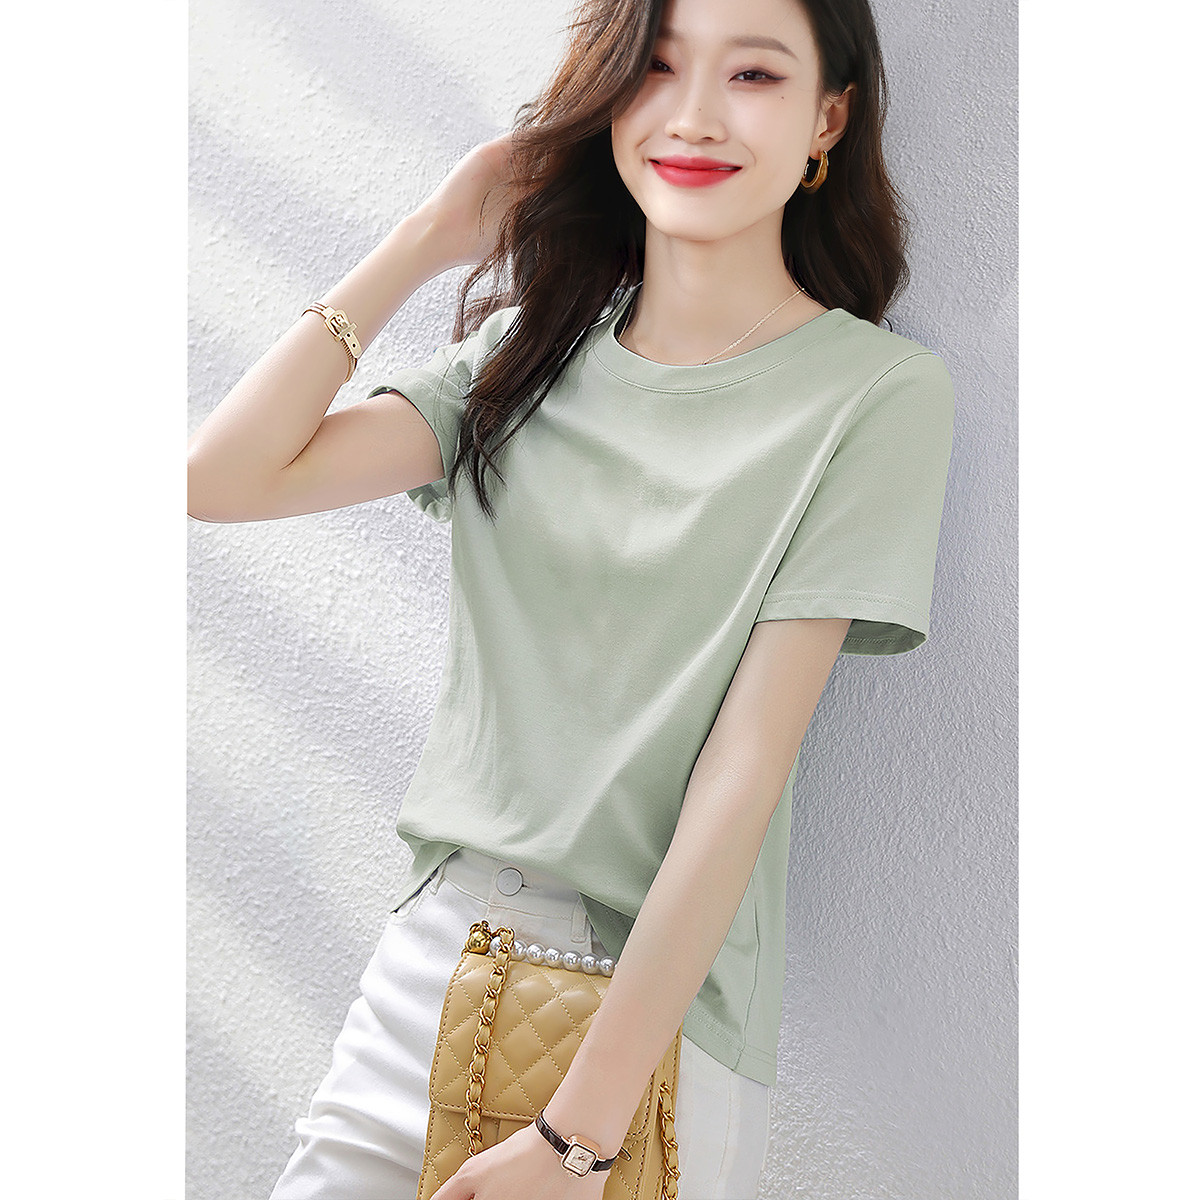 夏季韩版基础百搭简约休闲气质显瘦纯色短袖T恤女式